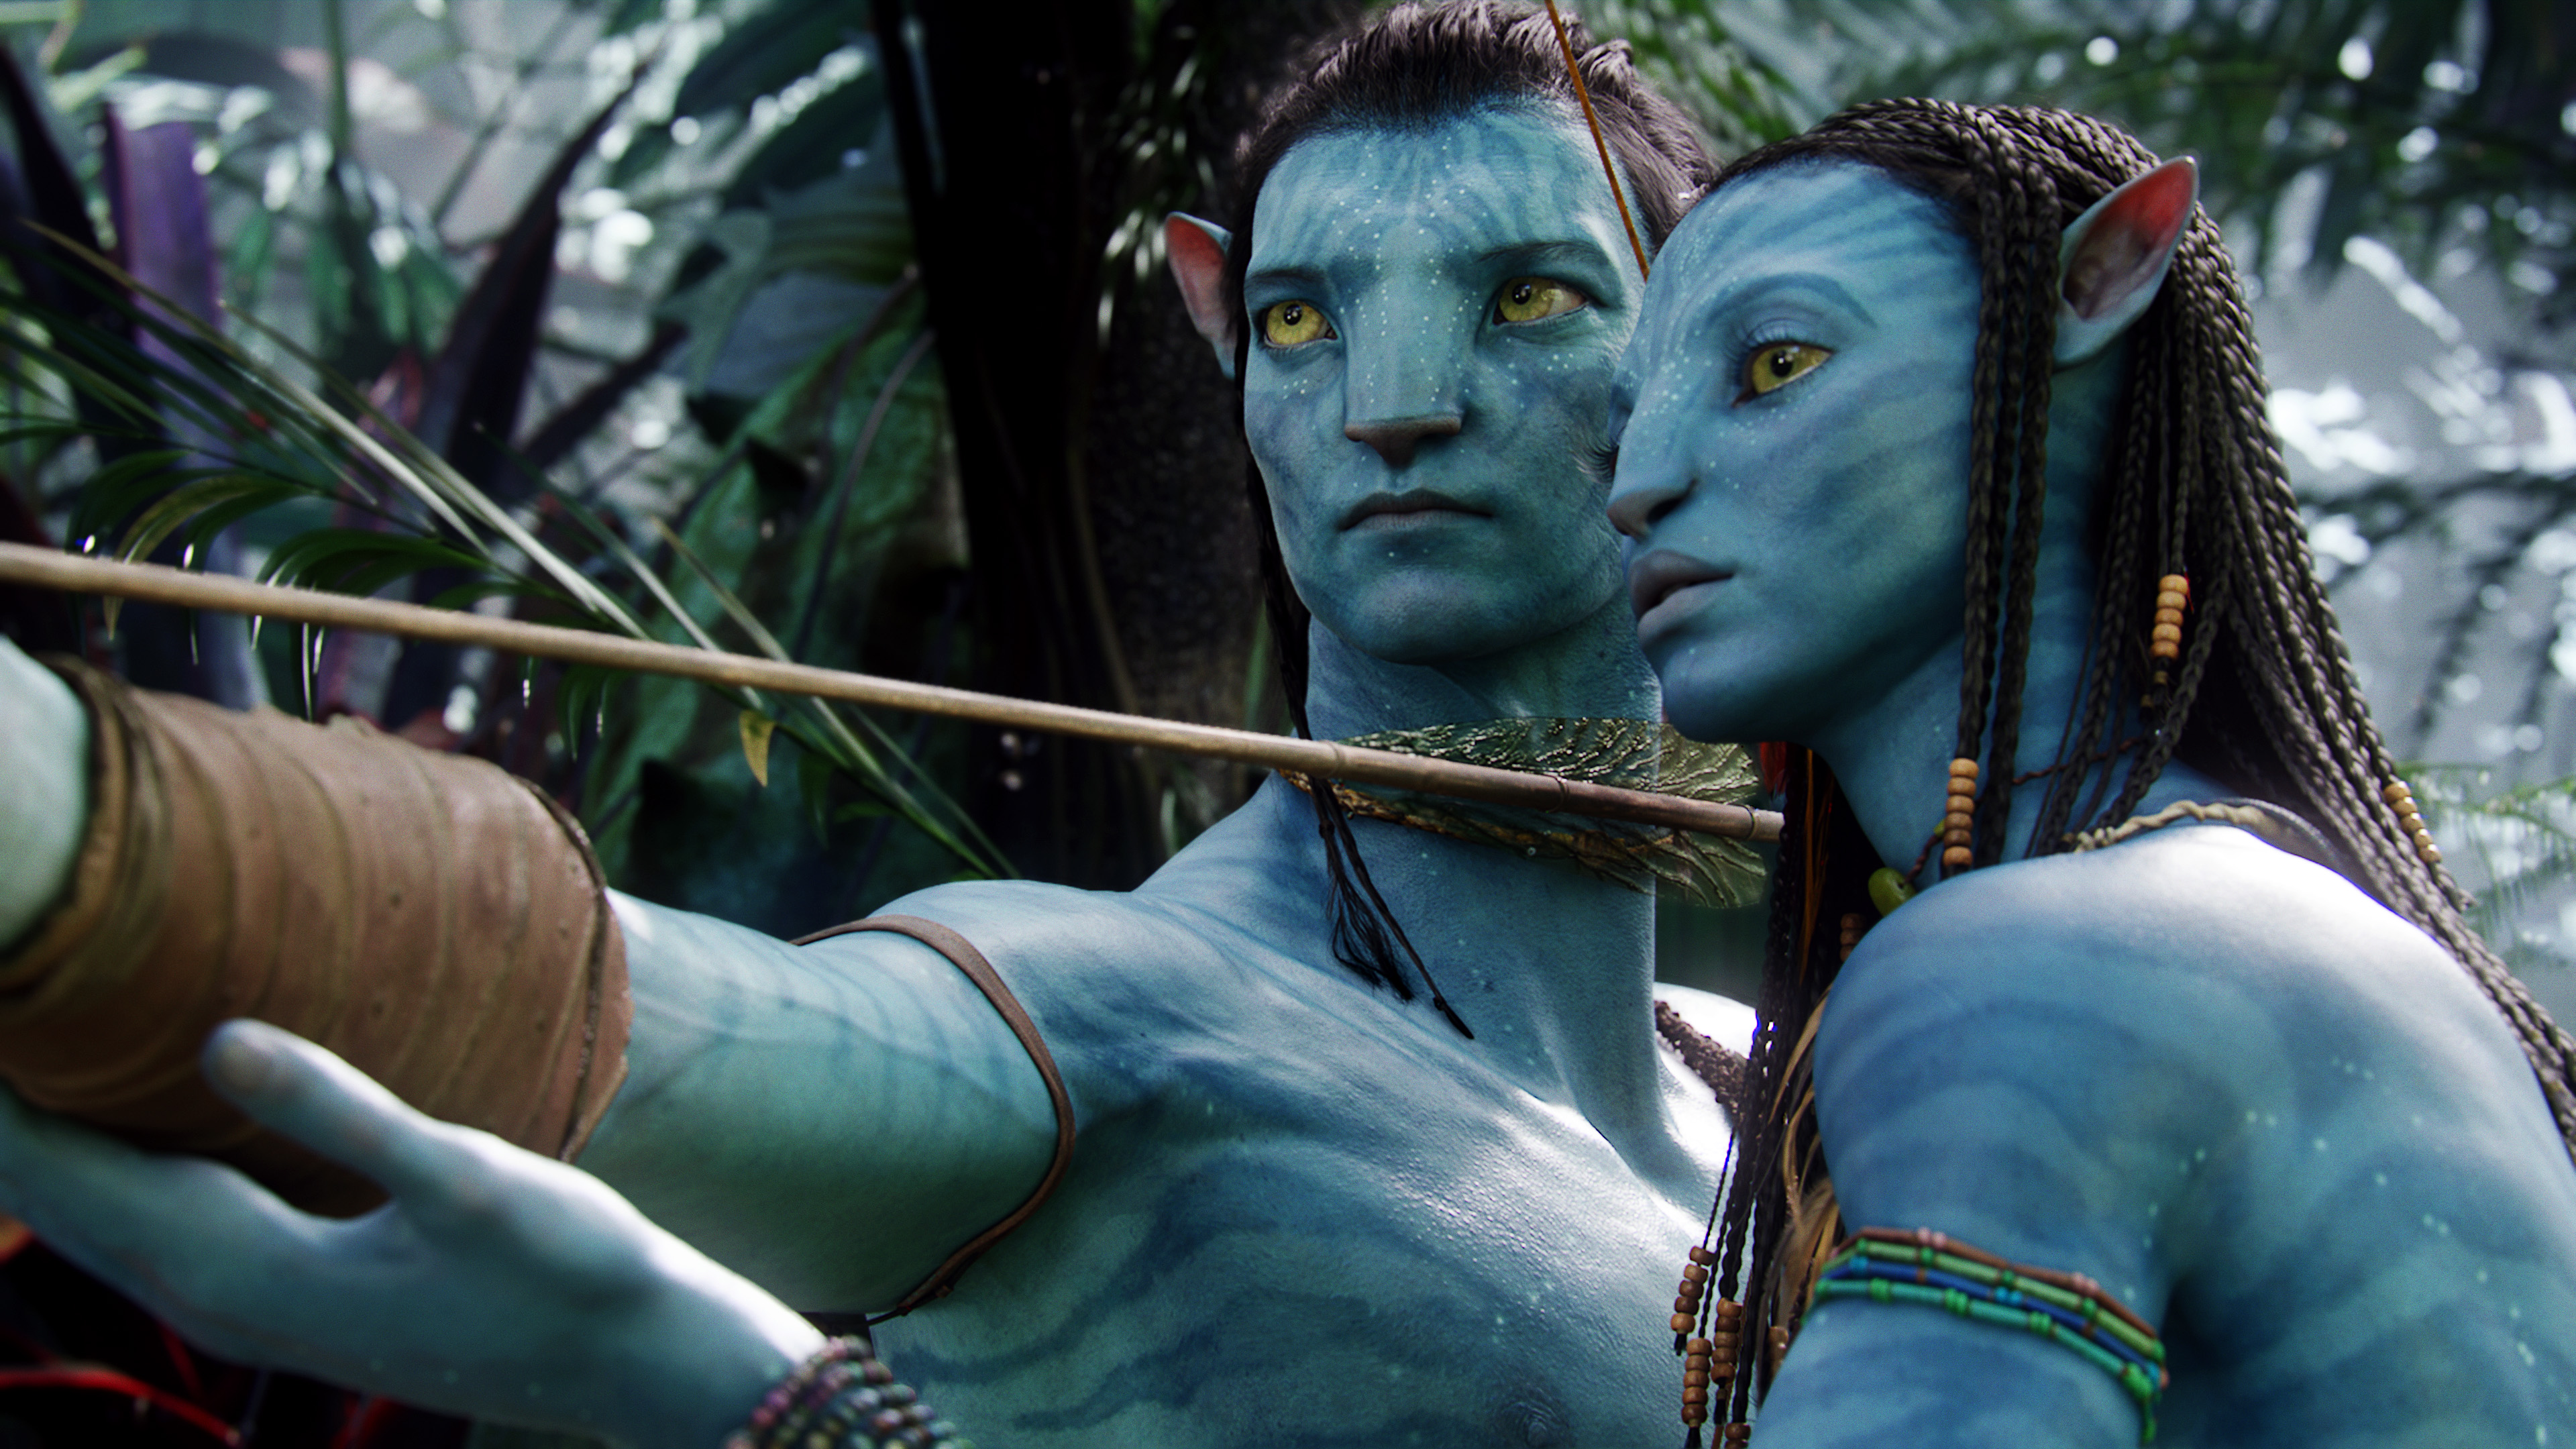 Gia đình Blue Avatar: Công chúng sẽ được chứng kiến gia đình nhân vật chính trong Blue Avatar hình thành và đối mặt với những thử thách mới trong cuộc sống trên hành tinh Pandora. Xem gia đình người Na\'vi làm việc với nhau để giữ vững truyền thống và giúp đỡ những người khác trên hành trình mới.